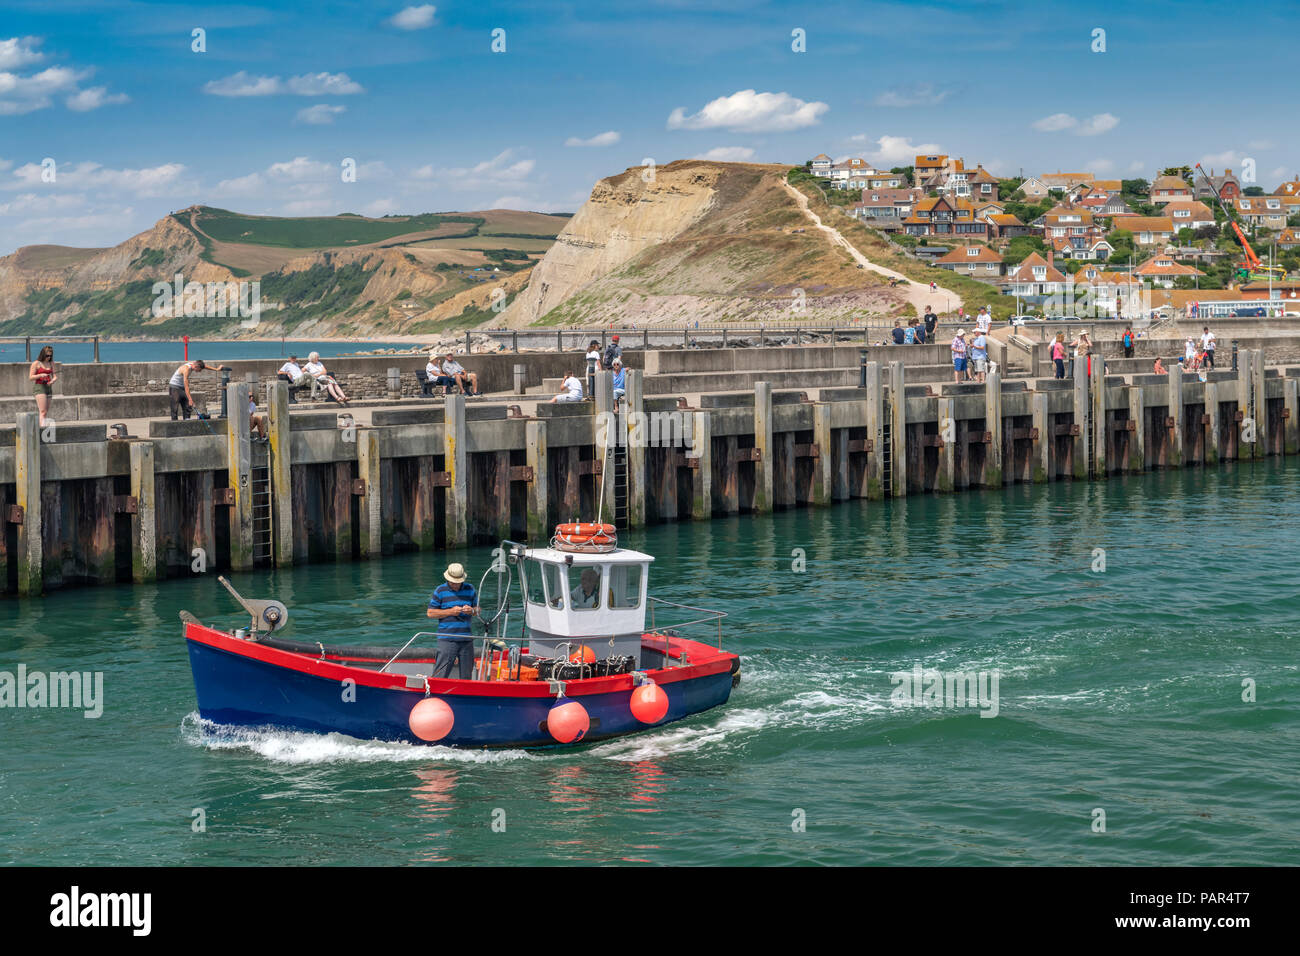 Una piccola barca da pesca lascia il pittoresco porto di West Bay nel Dorset, reso famoso come il luogo per la serie televisiva "Broadchurch'. Foto Stock